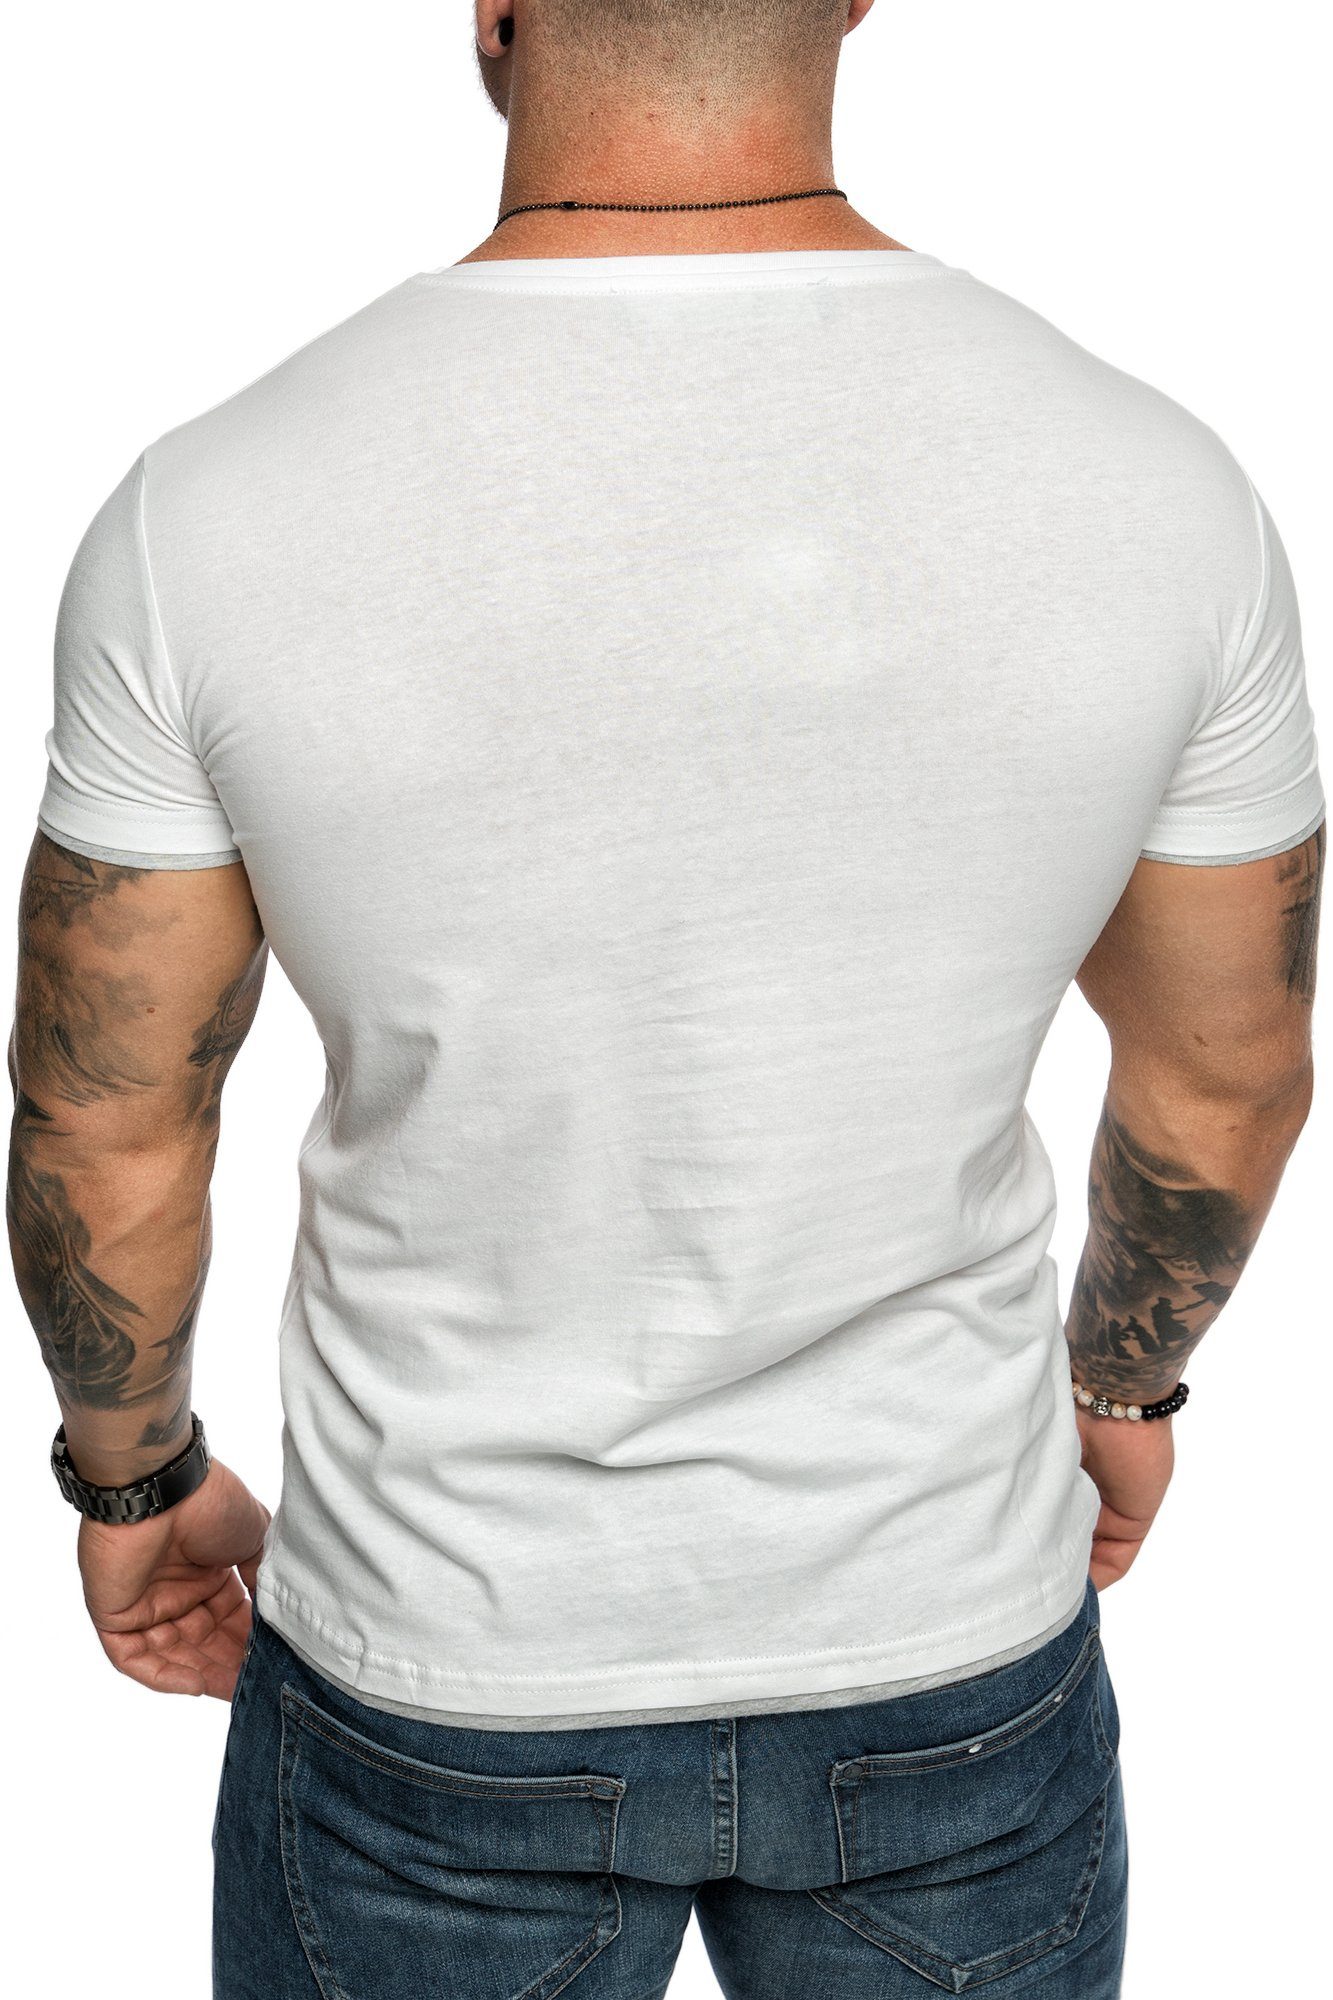 mit Slim-Fit Farbig Rundhalsausschnitt Shirt LAKEWOOD T-Shirt Doppel Herren Weiß/Grau Amaci&Sons Basic